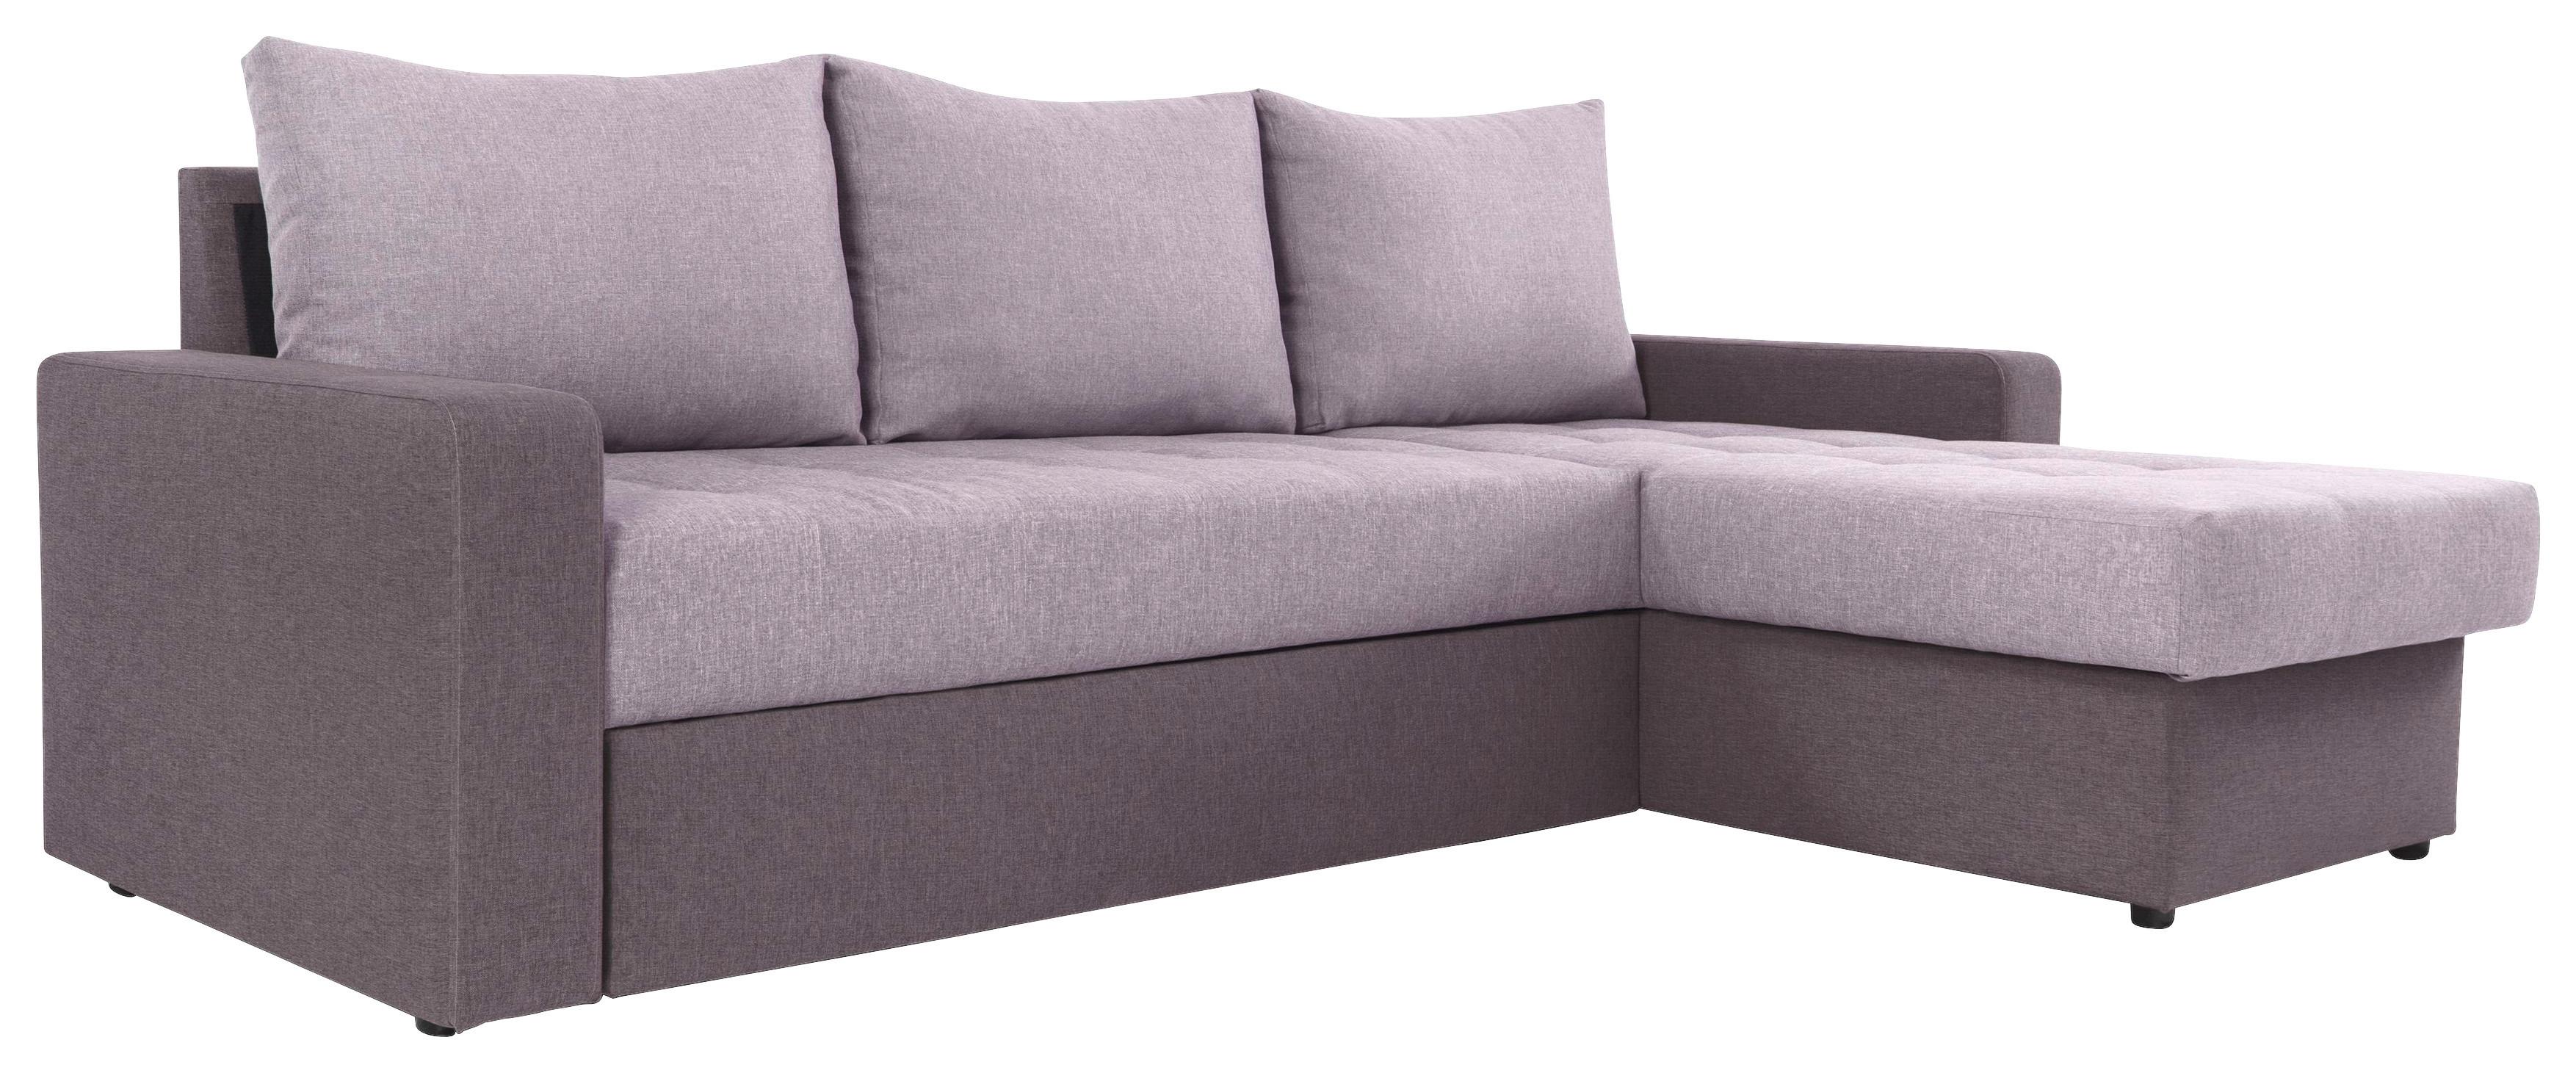 Sedežna Garnitura Atlanta - roza/črna, Moderno, tekstil (230/160cm) - Modern Living